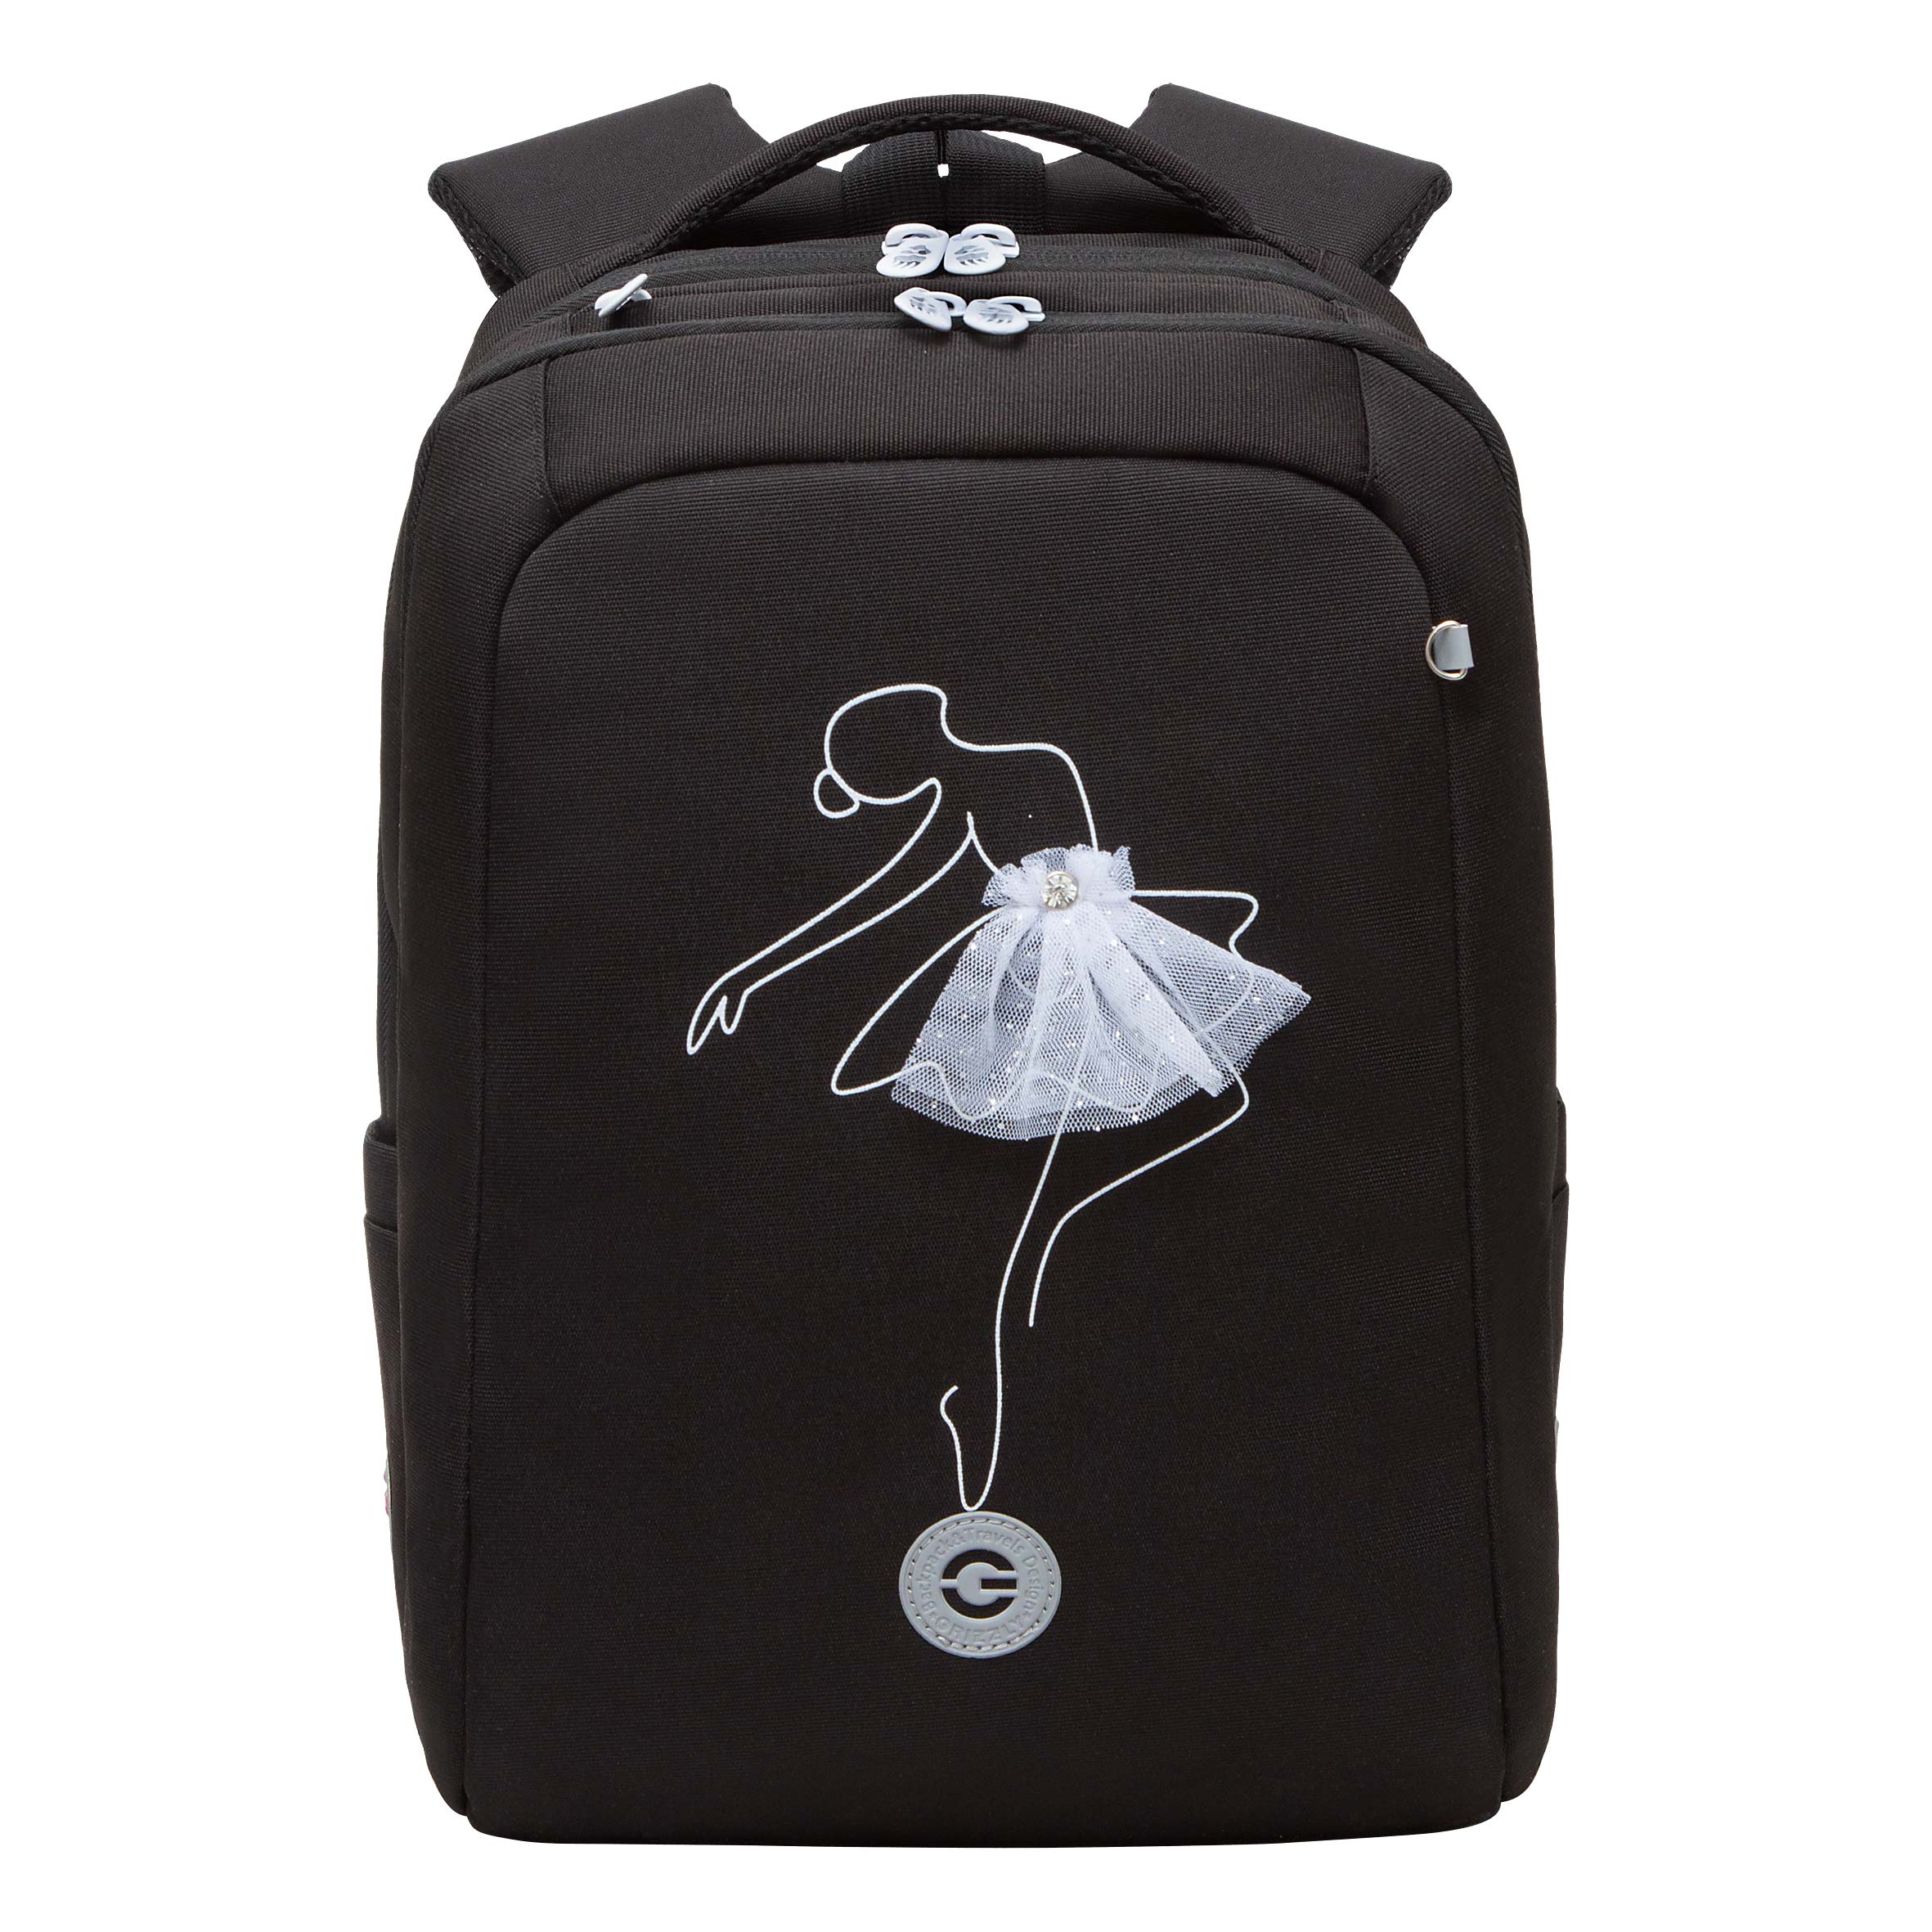 Рюкзак Grizzly школьный для девочки RG-366-1 2 черный - белый